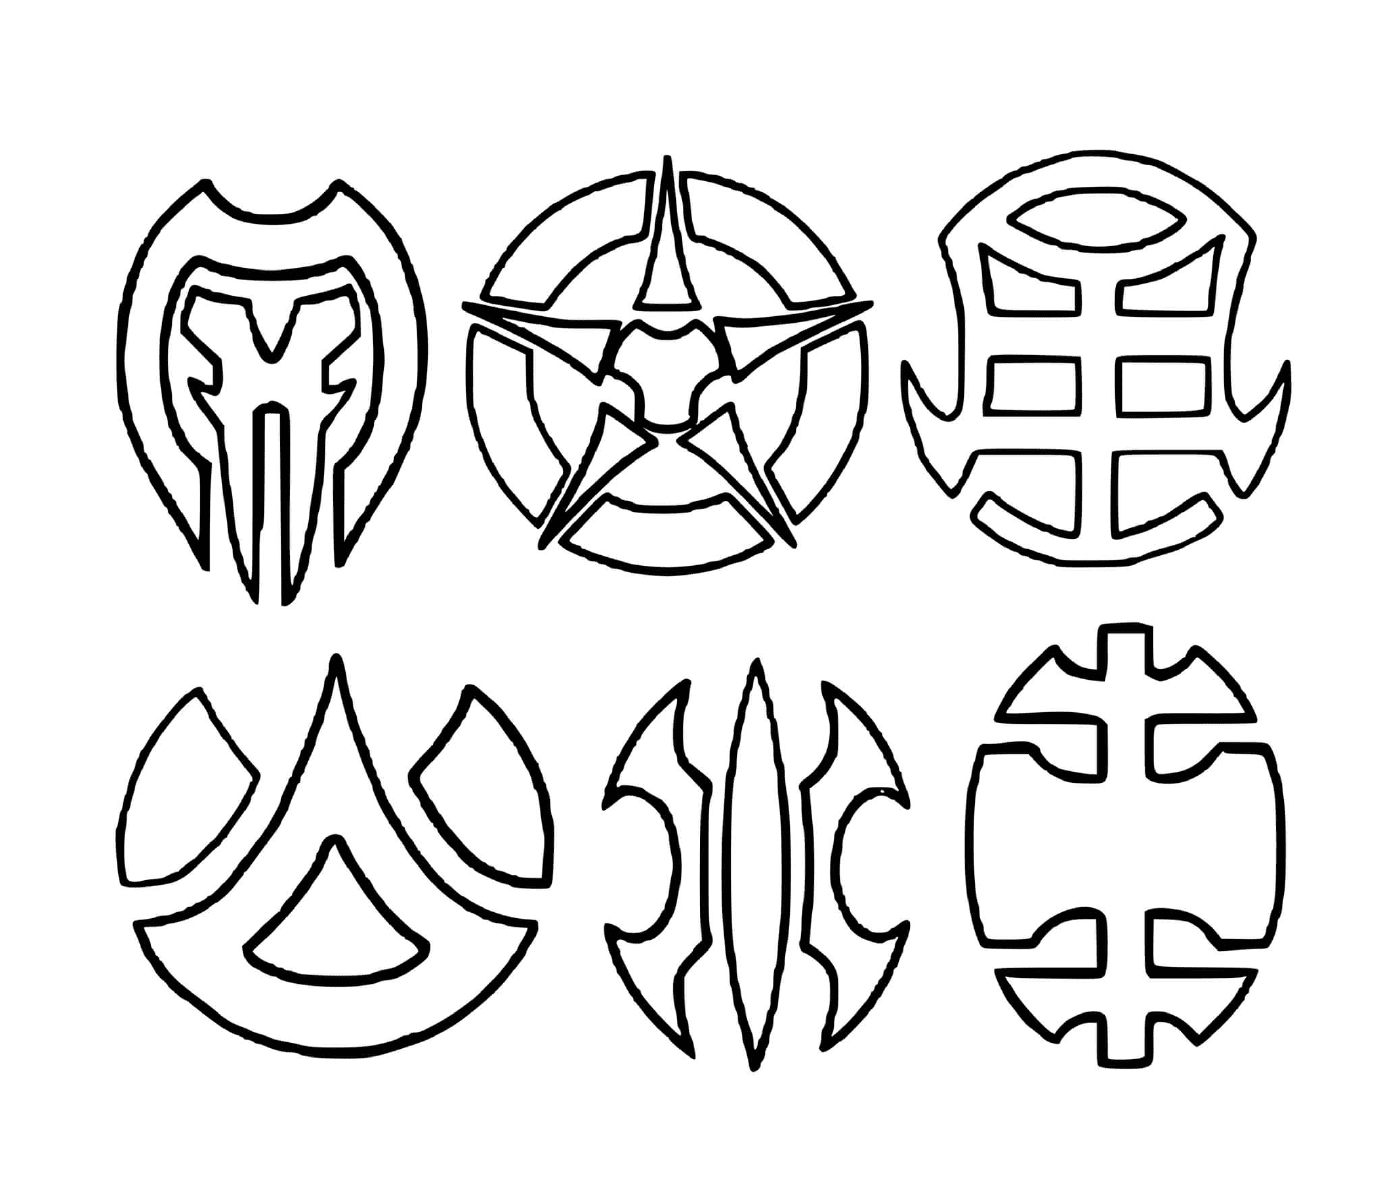   un ensemble de six symboles dessinés 